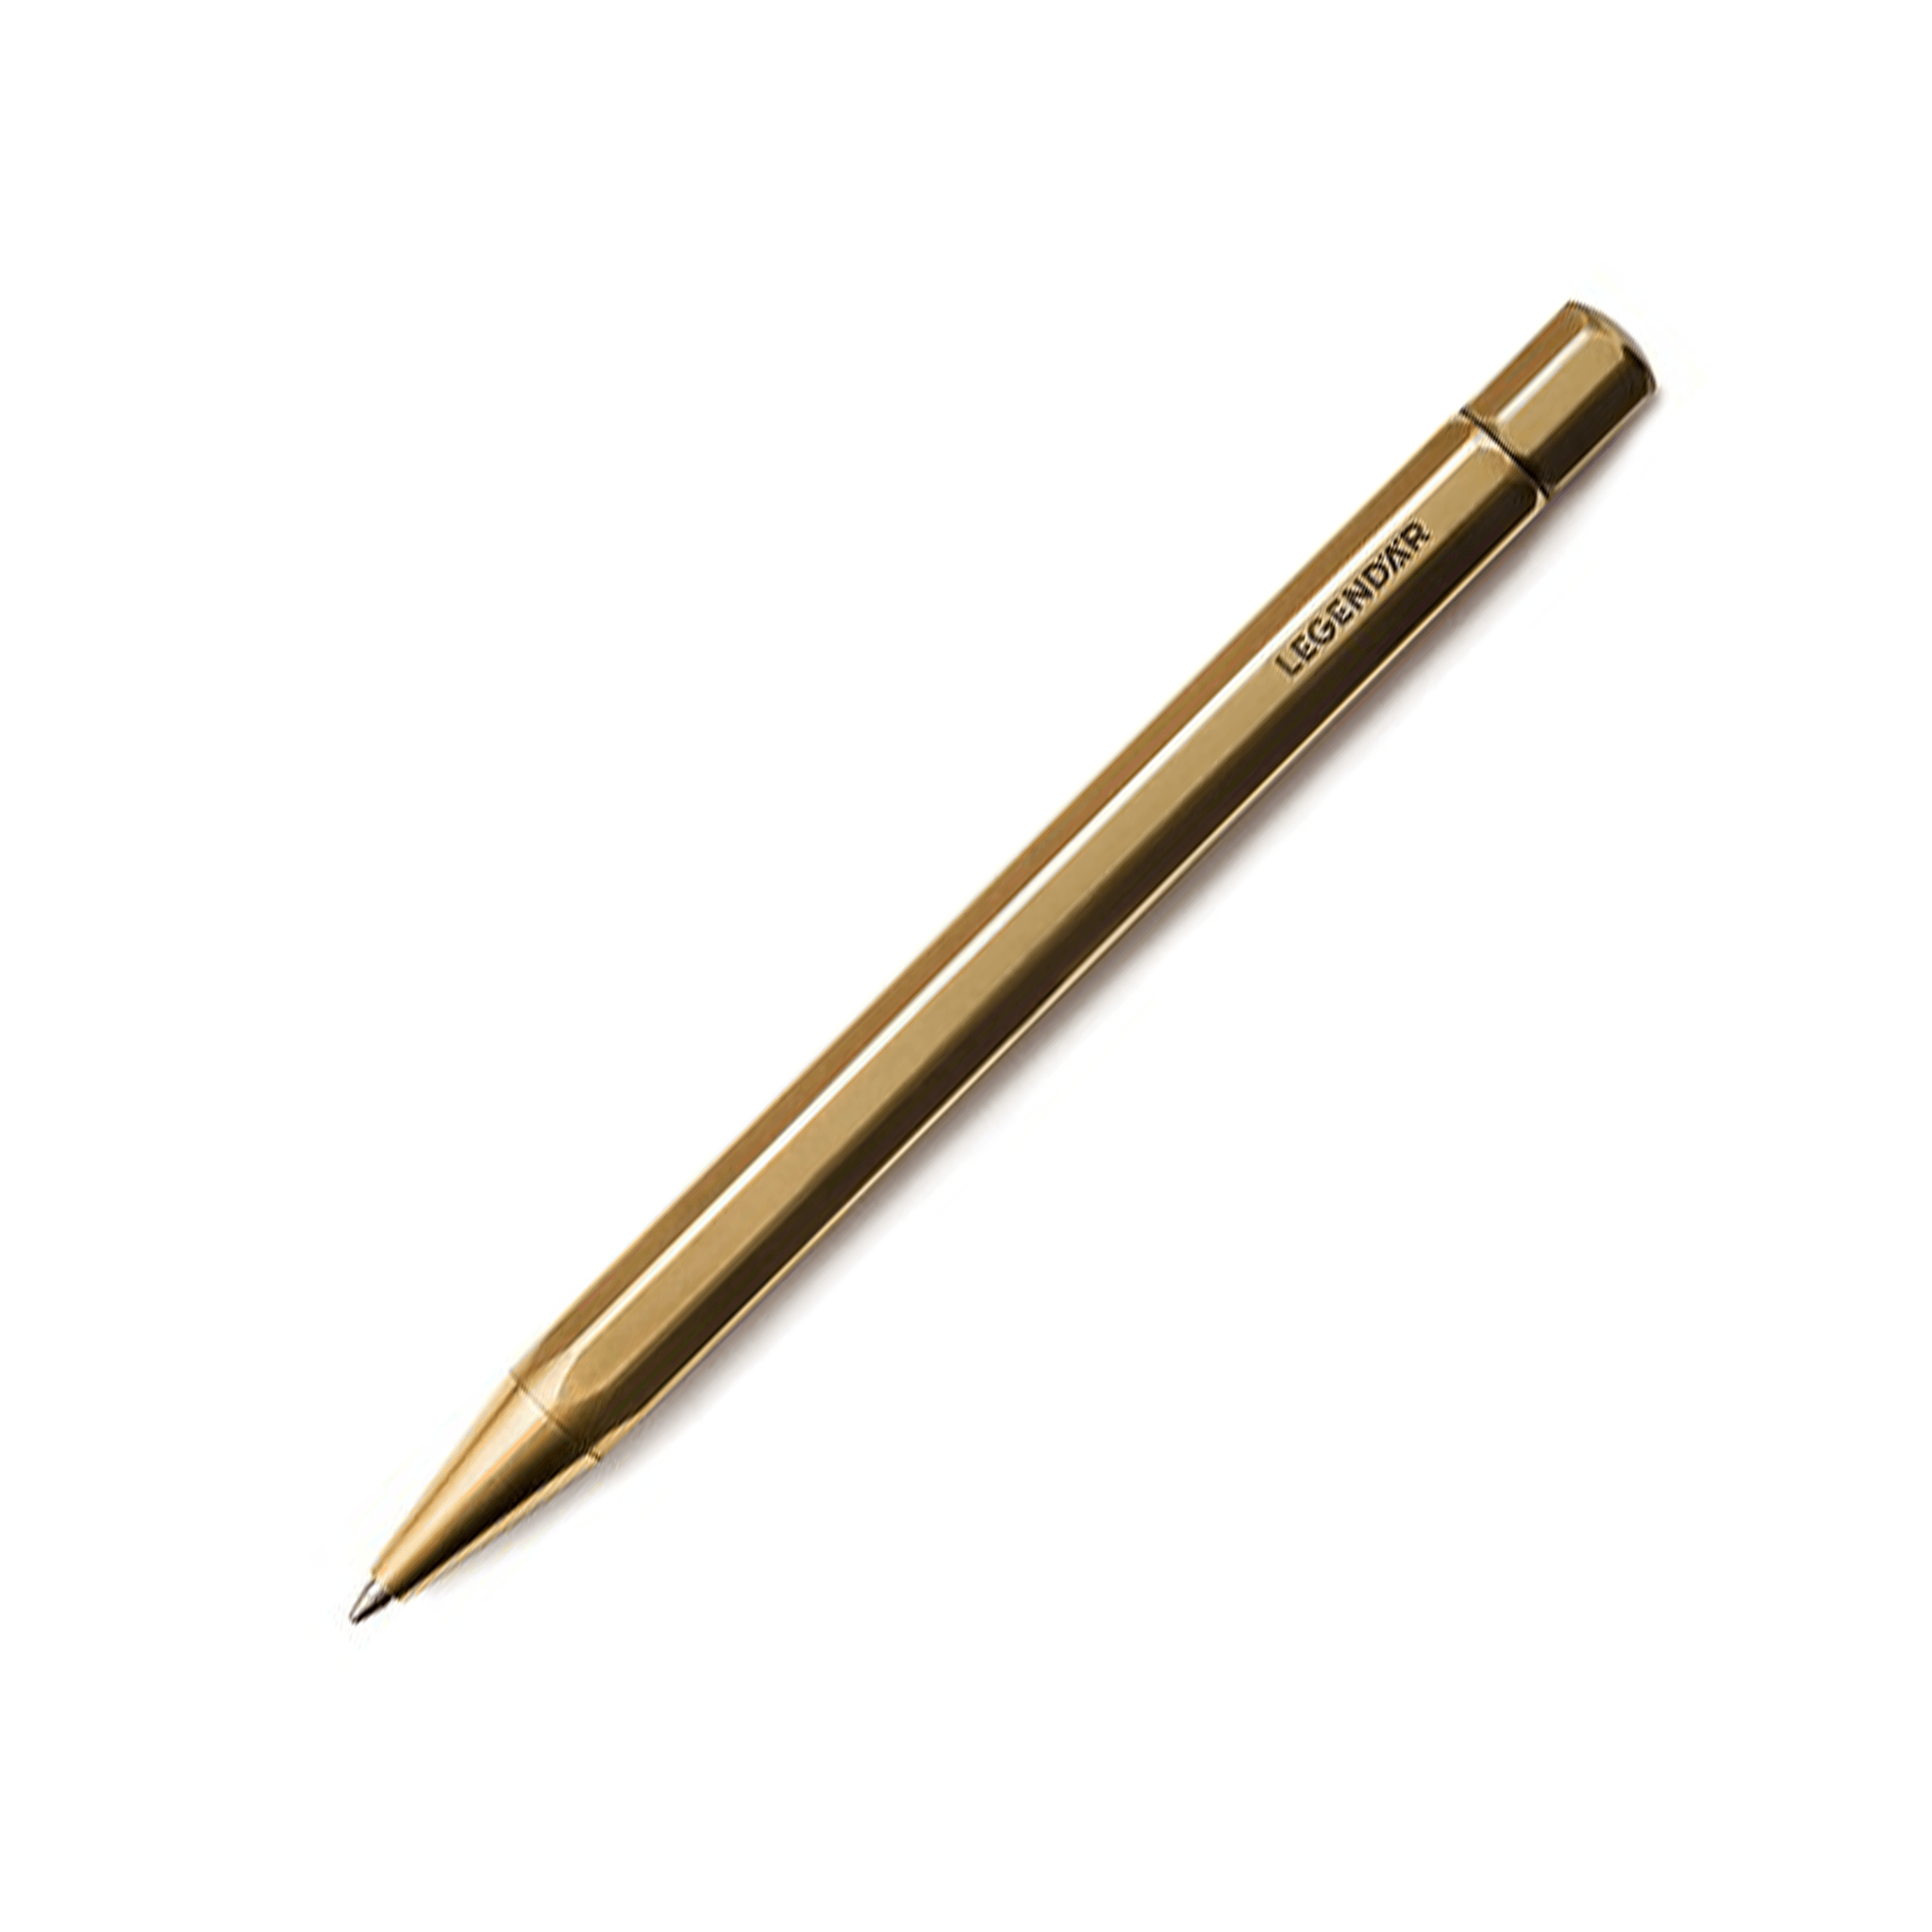 LGNDR TWYST Brass Ballpoint Pen - Laywine's